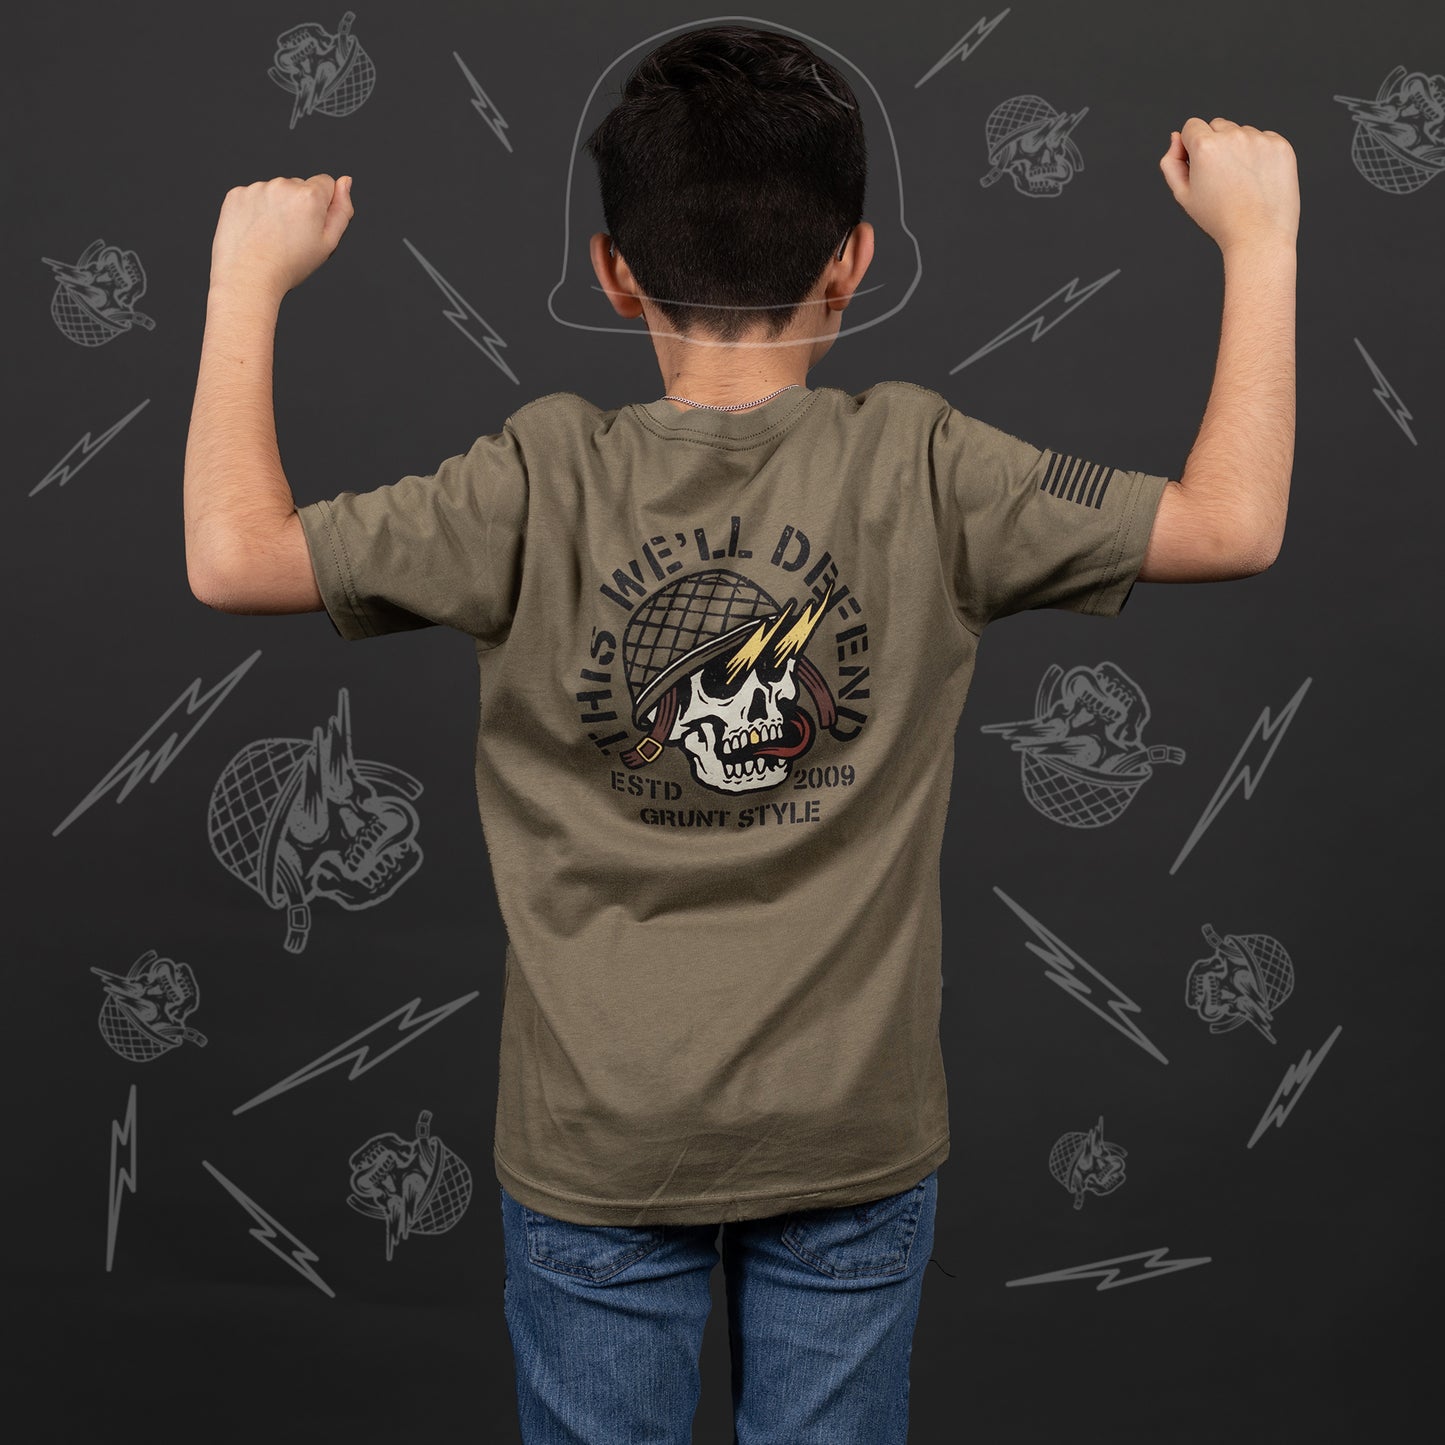 Patriotic T-Shirt for Kids - Death Skull